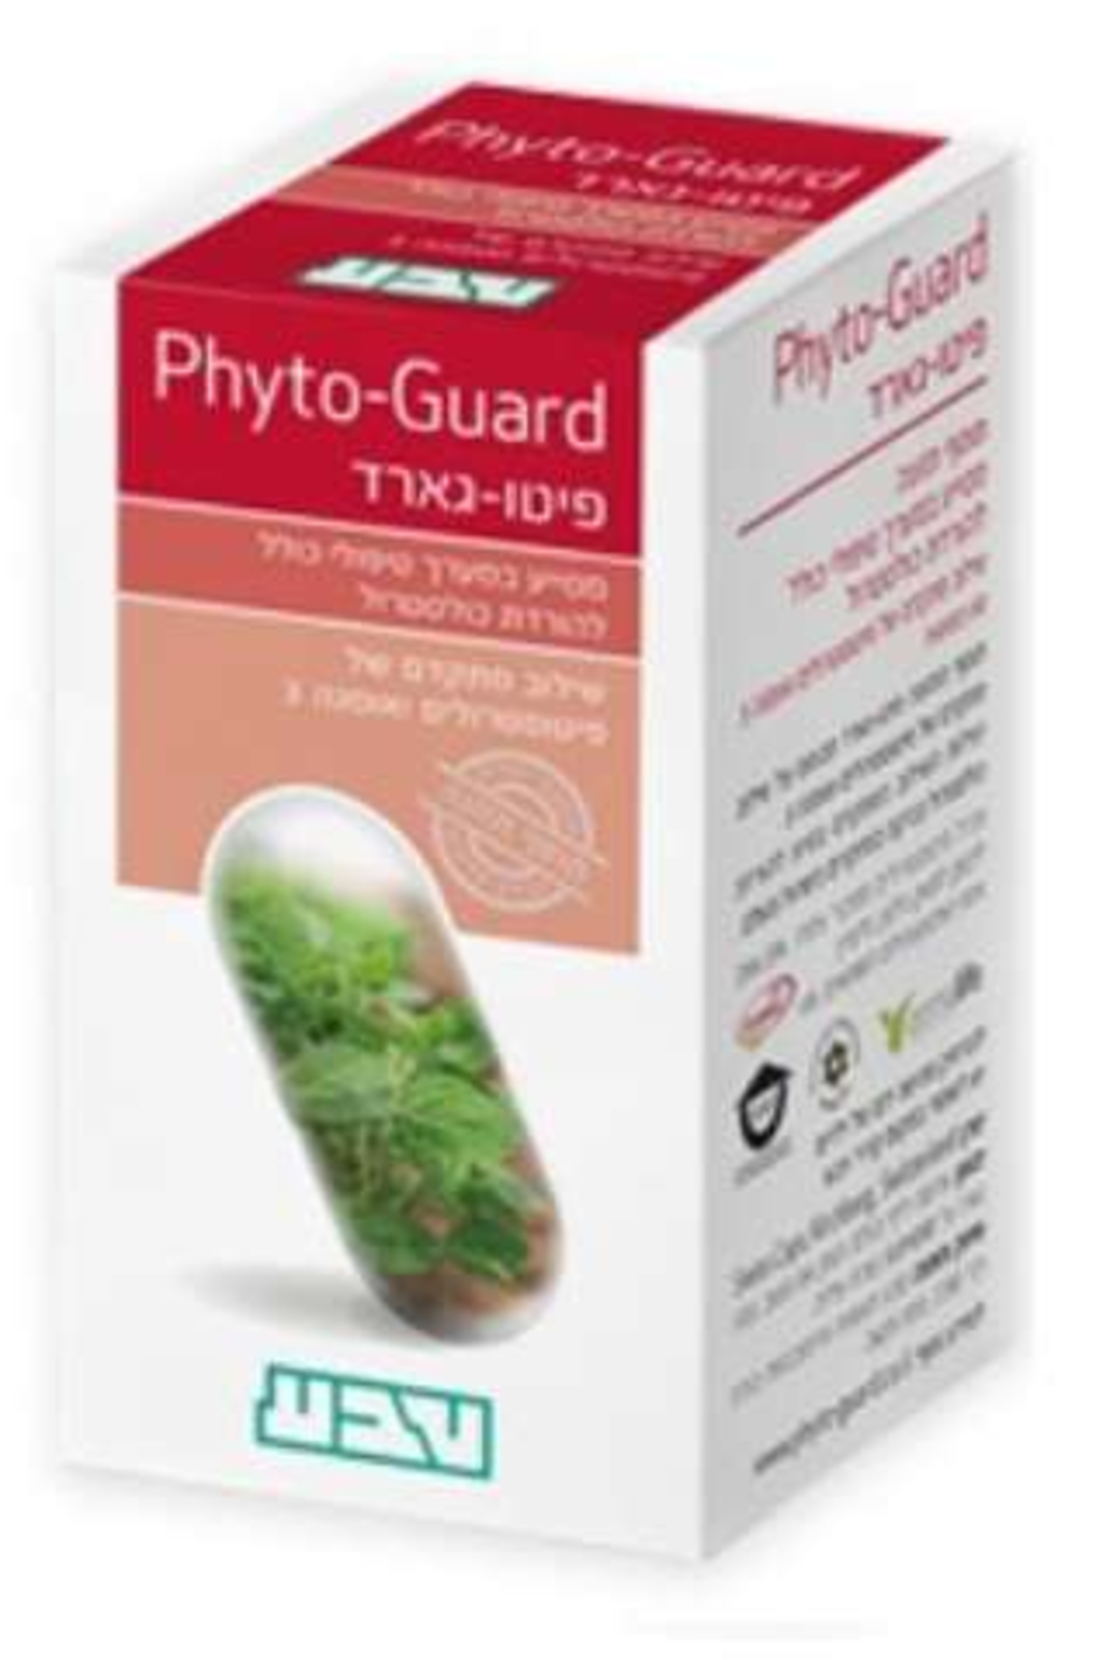 פיטו-גארד טבע - תוסף להורדת כולסטרול Phyto-Guard